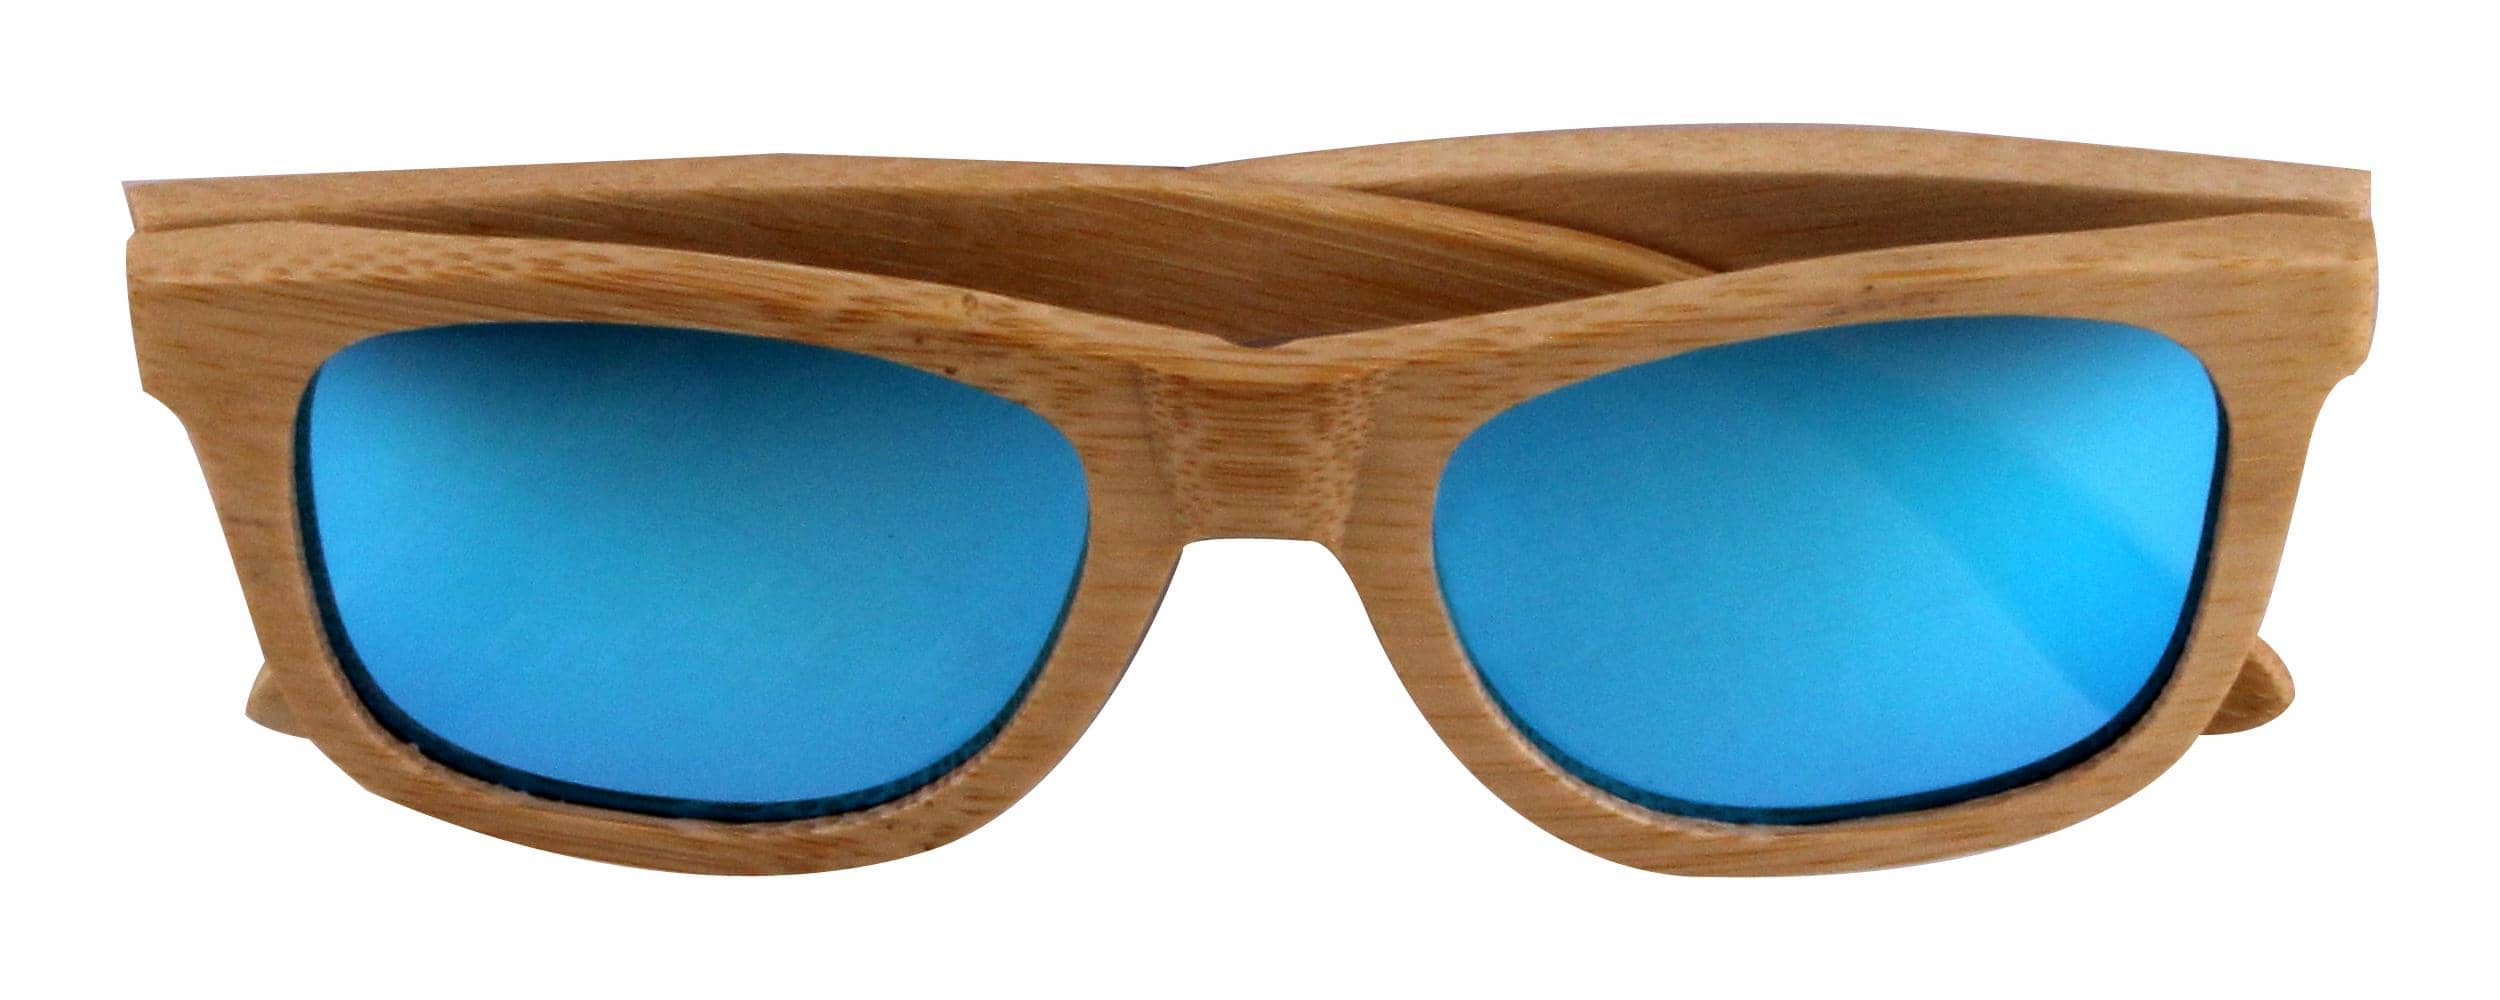 5one® Bamboo Blue - Bamboe houten Zonnebril - Blauwe spiegel lens